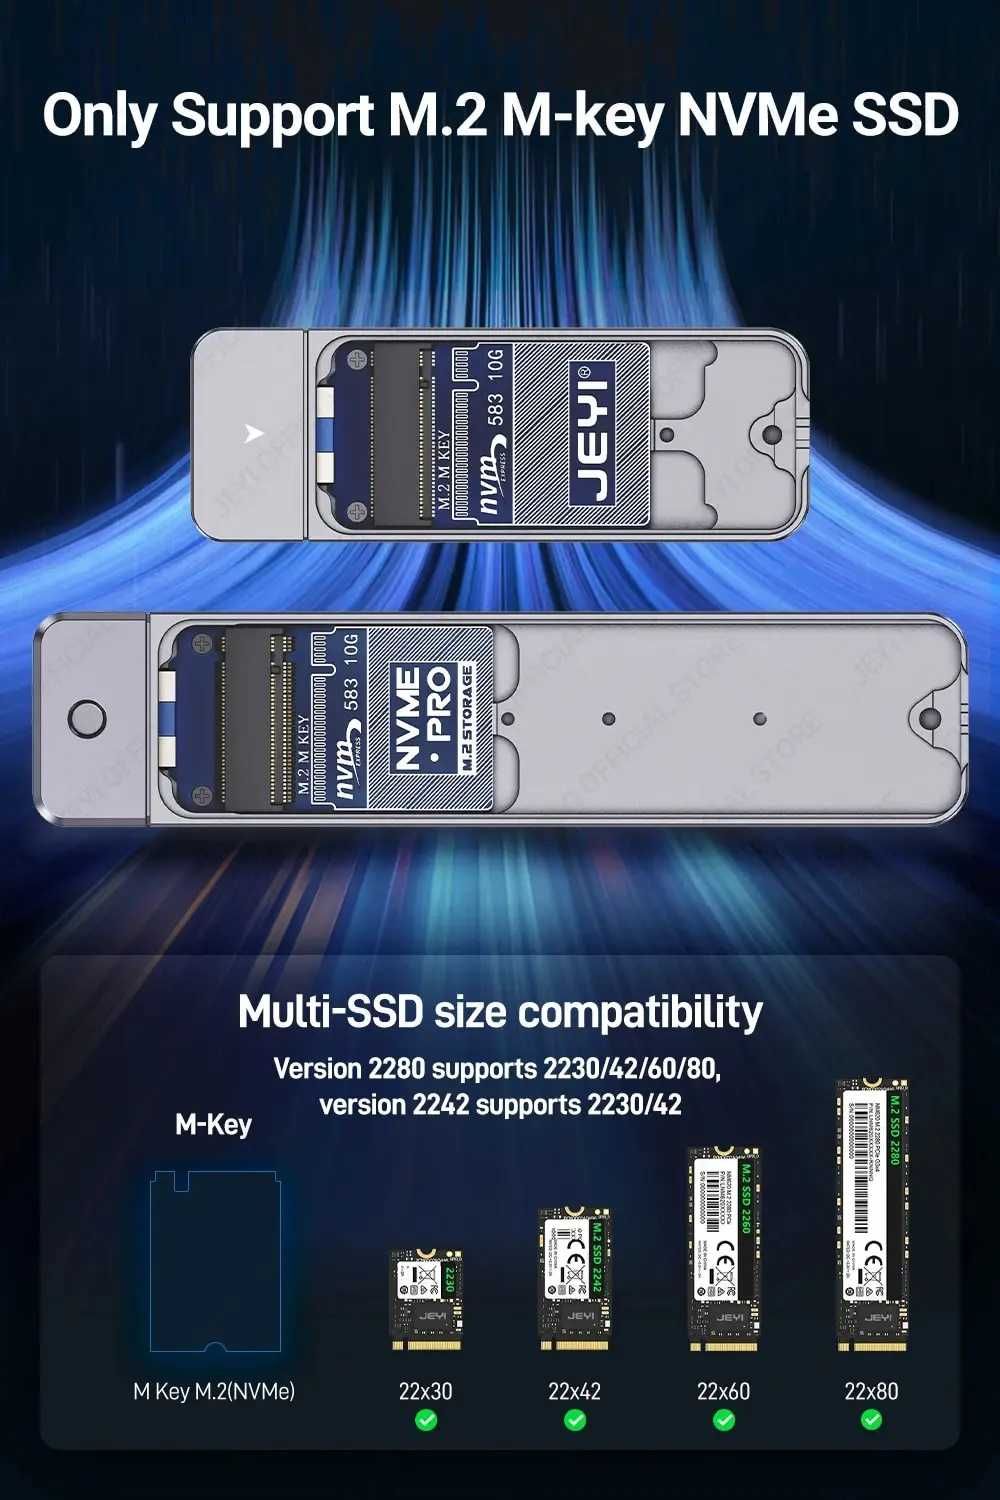 Внешний адаптер JEYI M.2 NVMe 2242 PCIe SSD to USB 3.2 карман